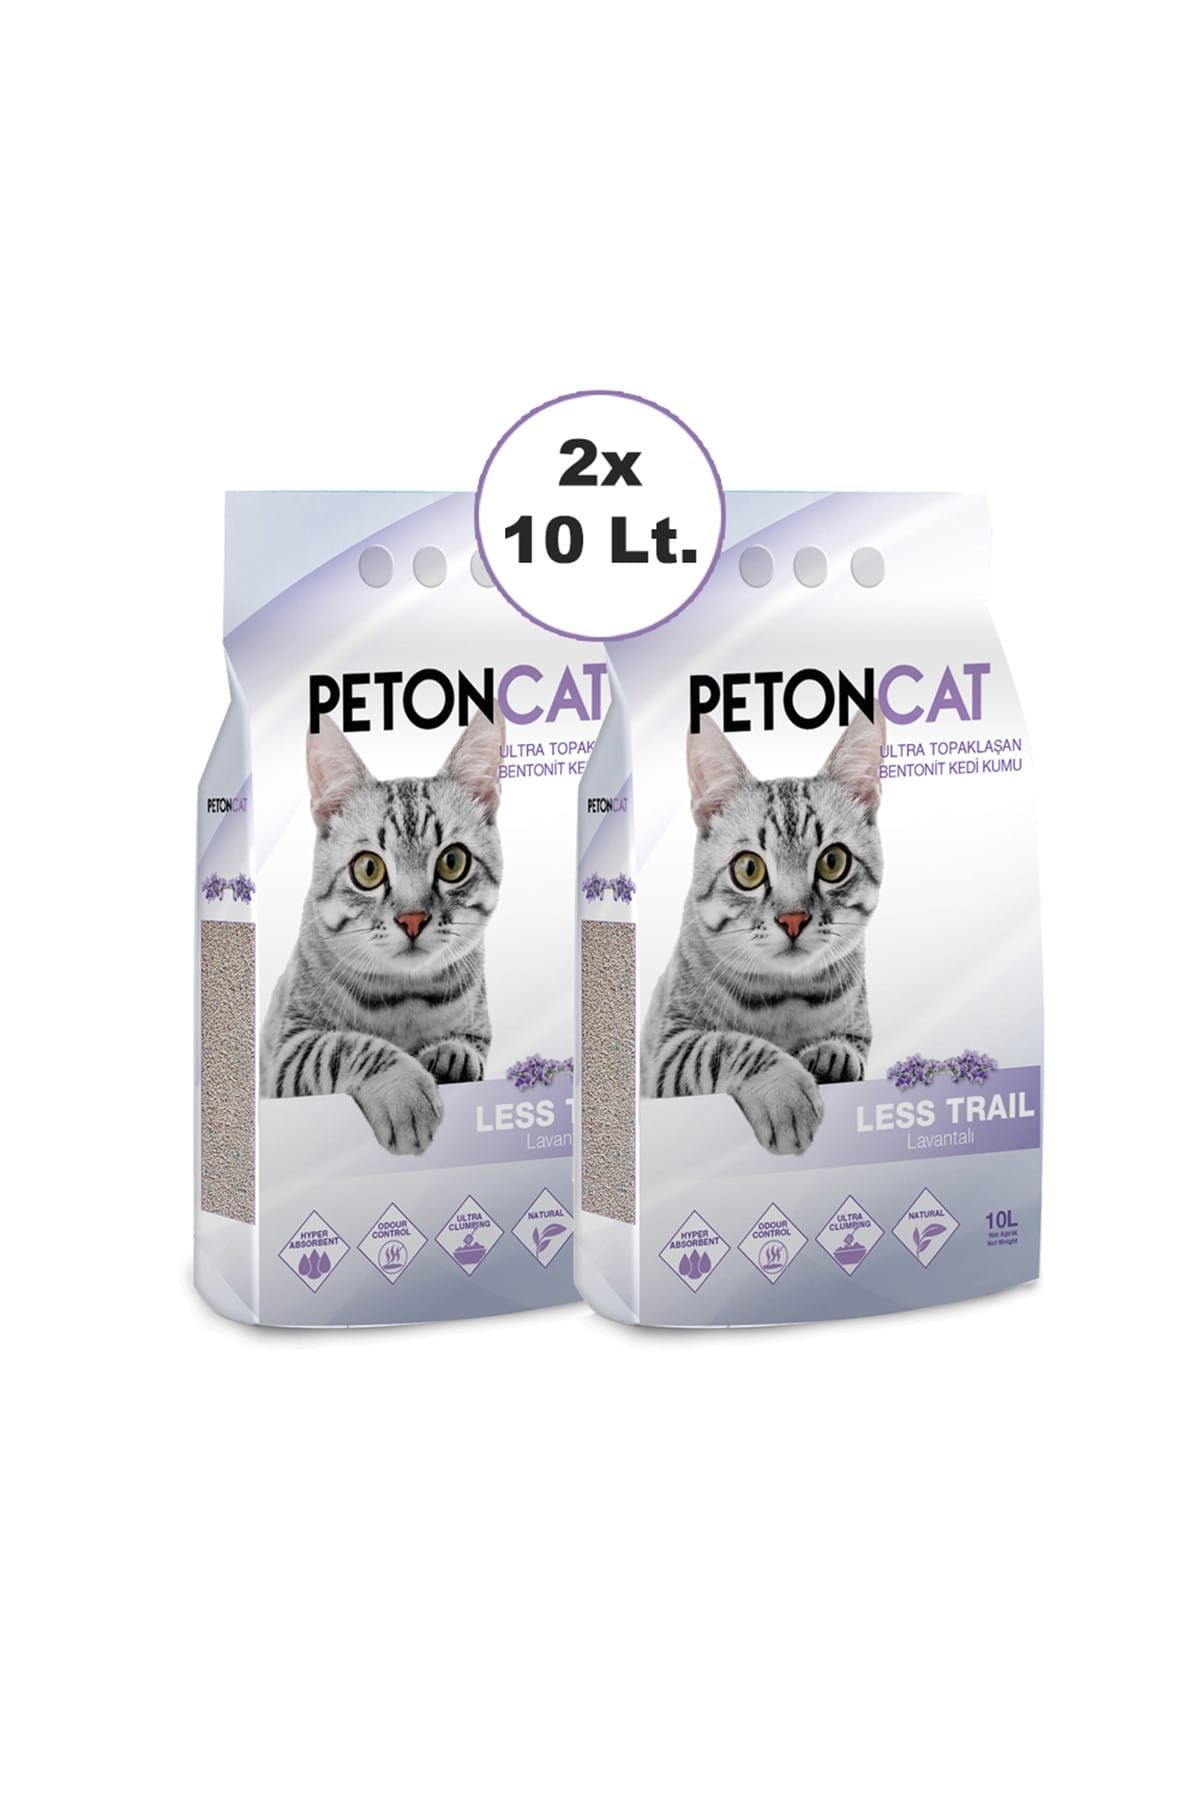 Peton Cat Lavantalı İnce Taneli Topaklaşan Kedi Kumu 2 x 10 Lt